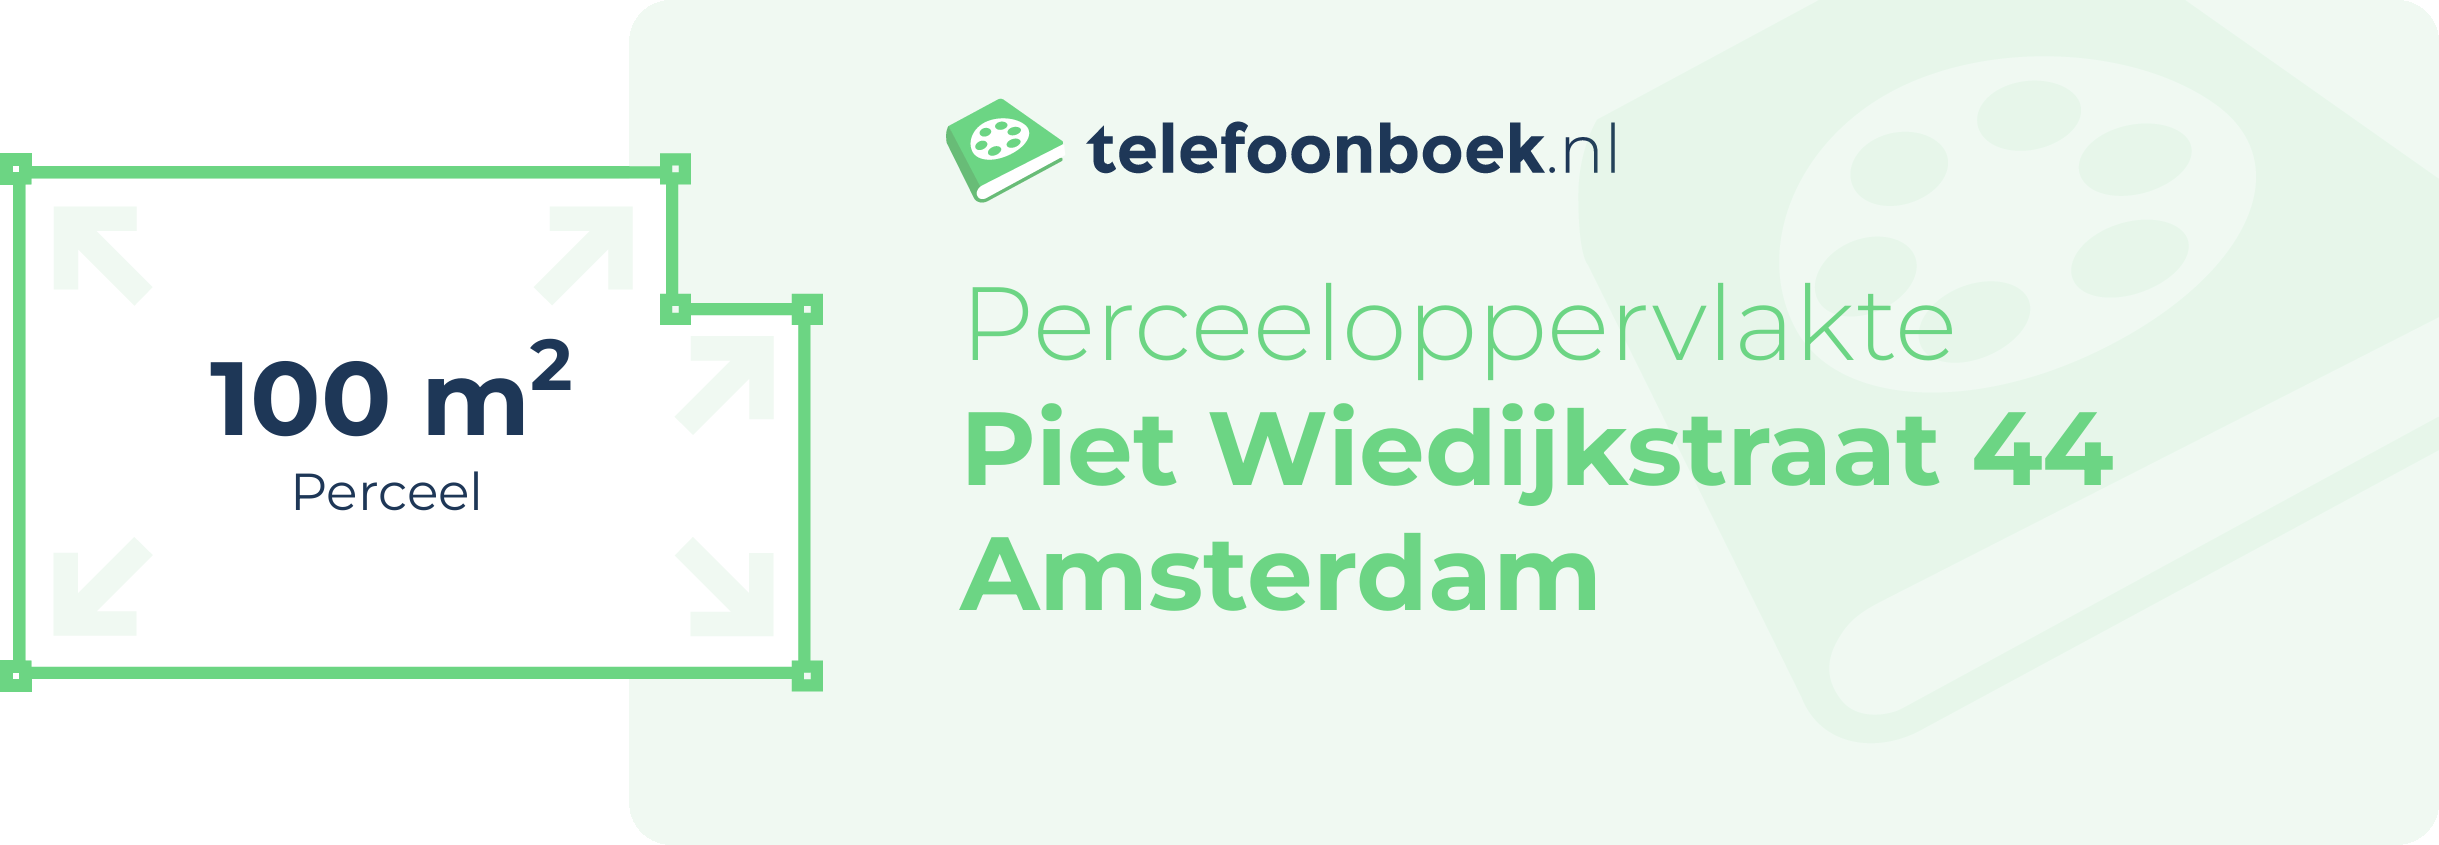 Perceeloppervlakte Piet Wiedijkstraat 44 Amsterdam